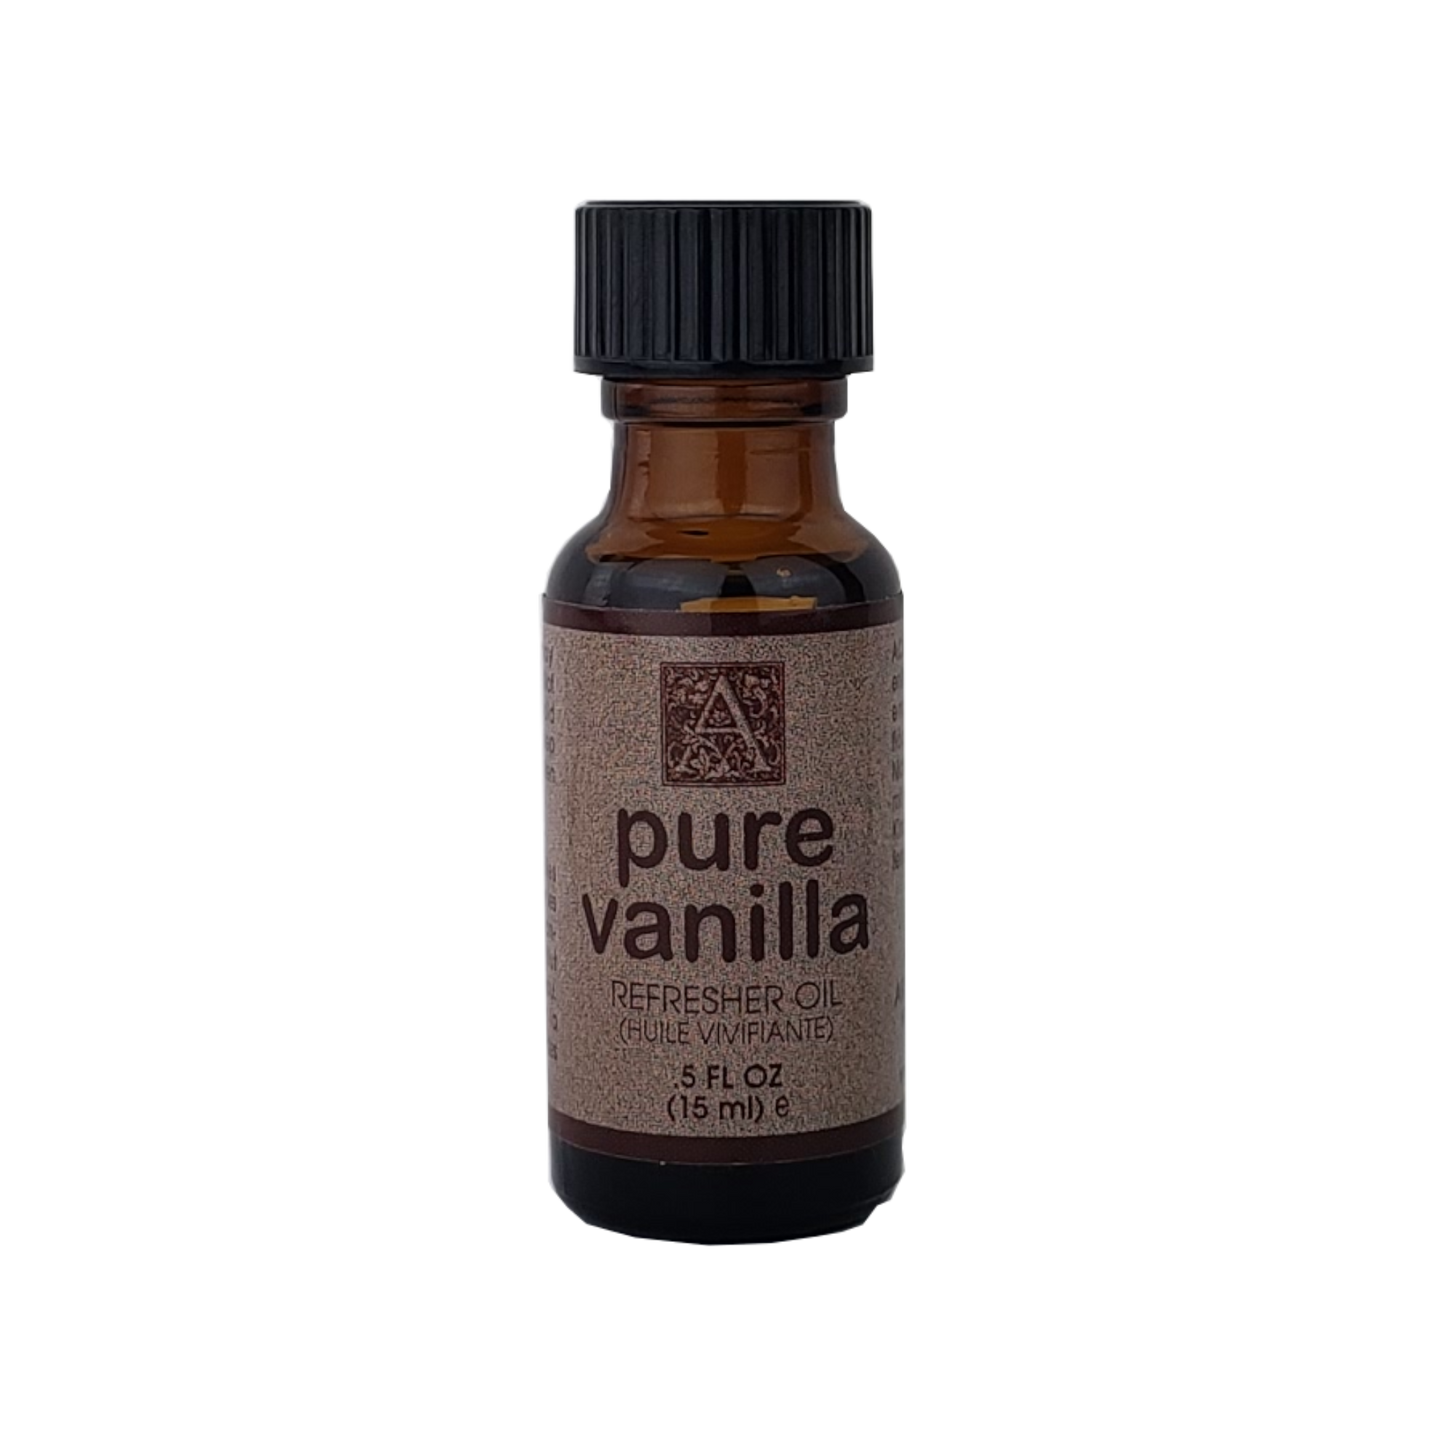 Pure Vanilla - Refresher Oil